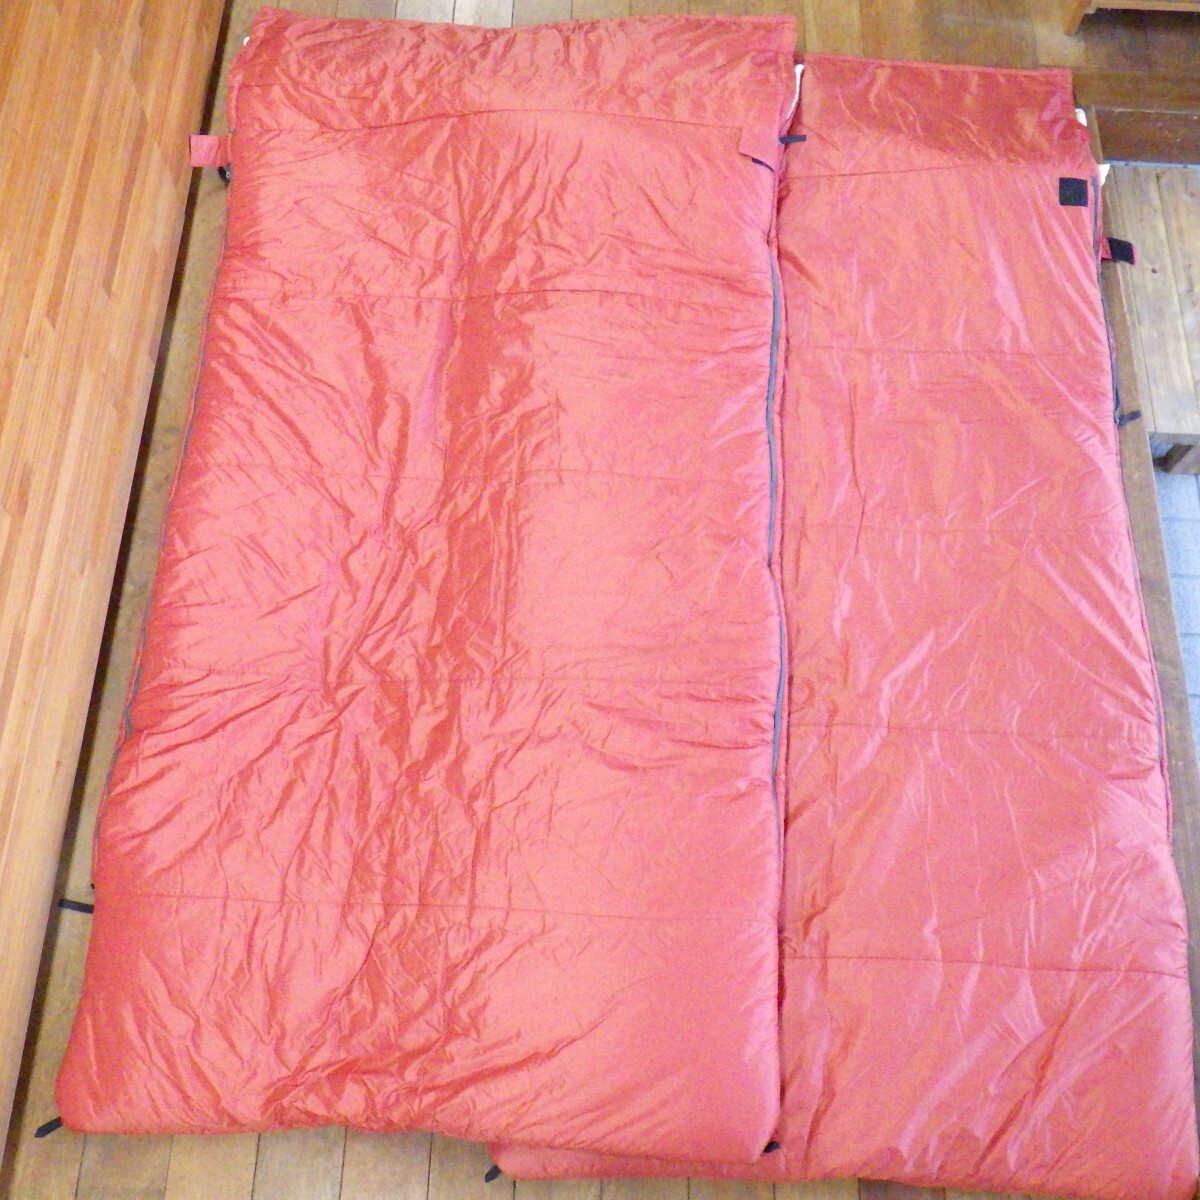  Snow Peak раздельный спальный мешок off тонн широкий LX BD-104 2 позиций комплект / спальный мешок постельные принадлежности /snow peak/ кемпинг товары для улицы 16